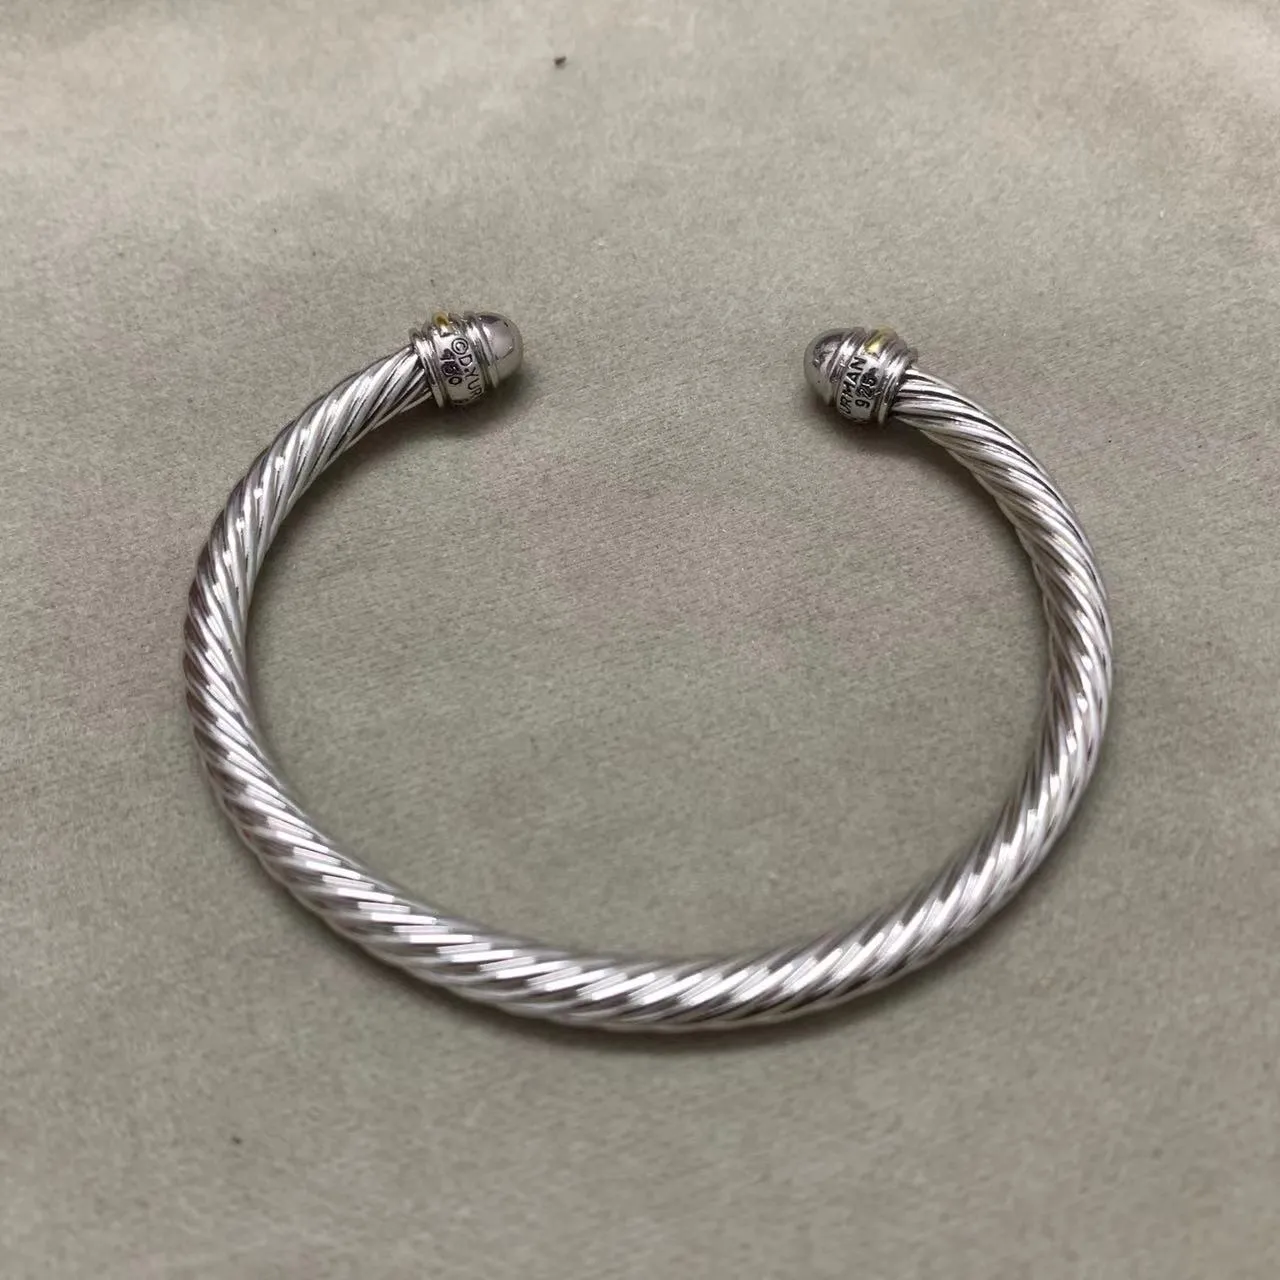 5 мм браслет дизайнерские браслеты-манжеты модные украшения для женщин мужчин золото серебро жемчуг голова крест браслет